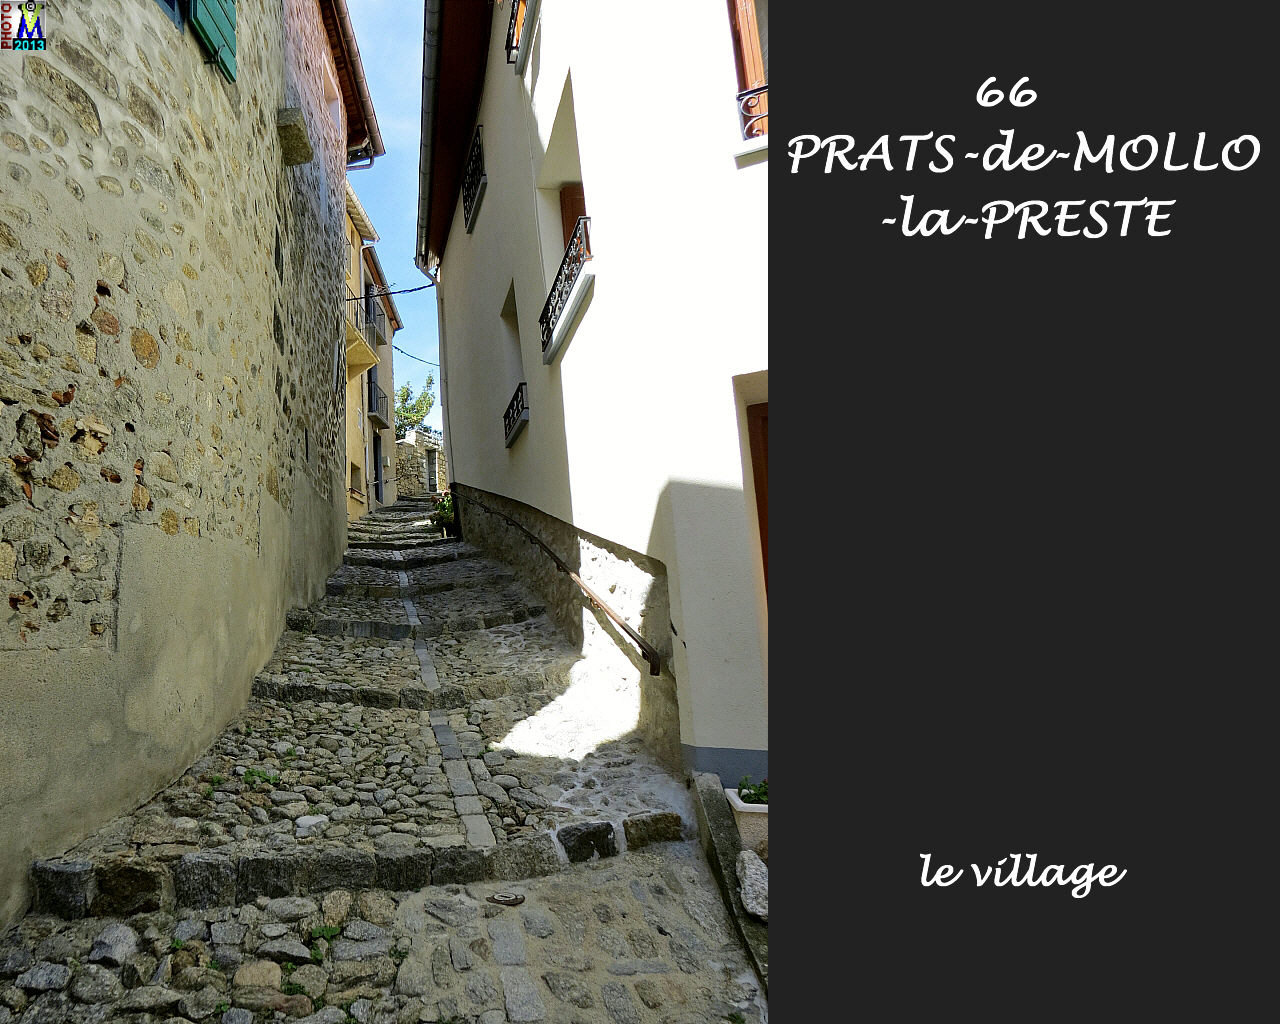 66PRATS-MOLLO-PRESTE_village_150.jpg